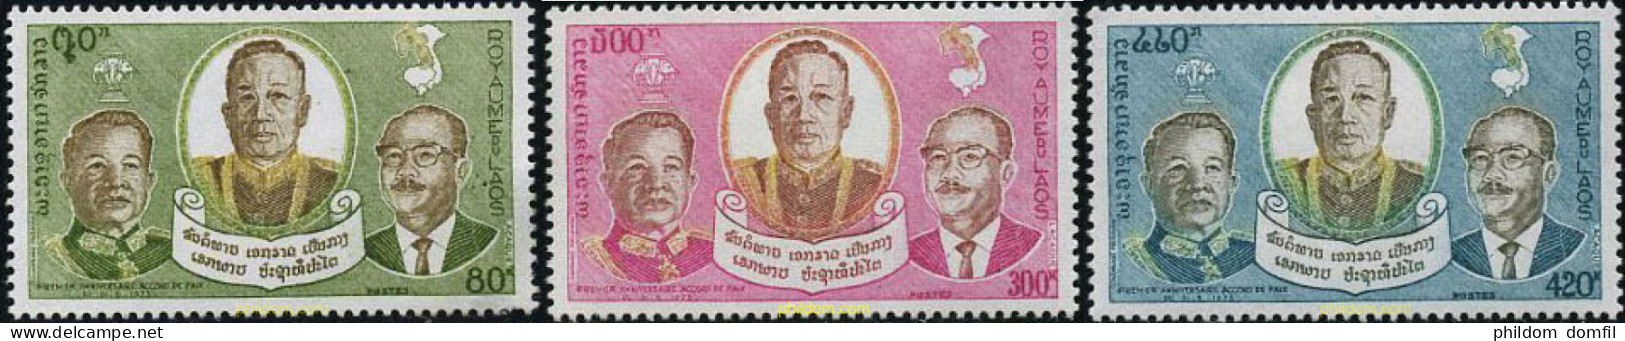 212392 MNH LAOS 1975 PRIMER ANIVERSARIO DEL ACUERDO DE PAZ DE VIENTIANE - Laos